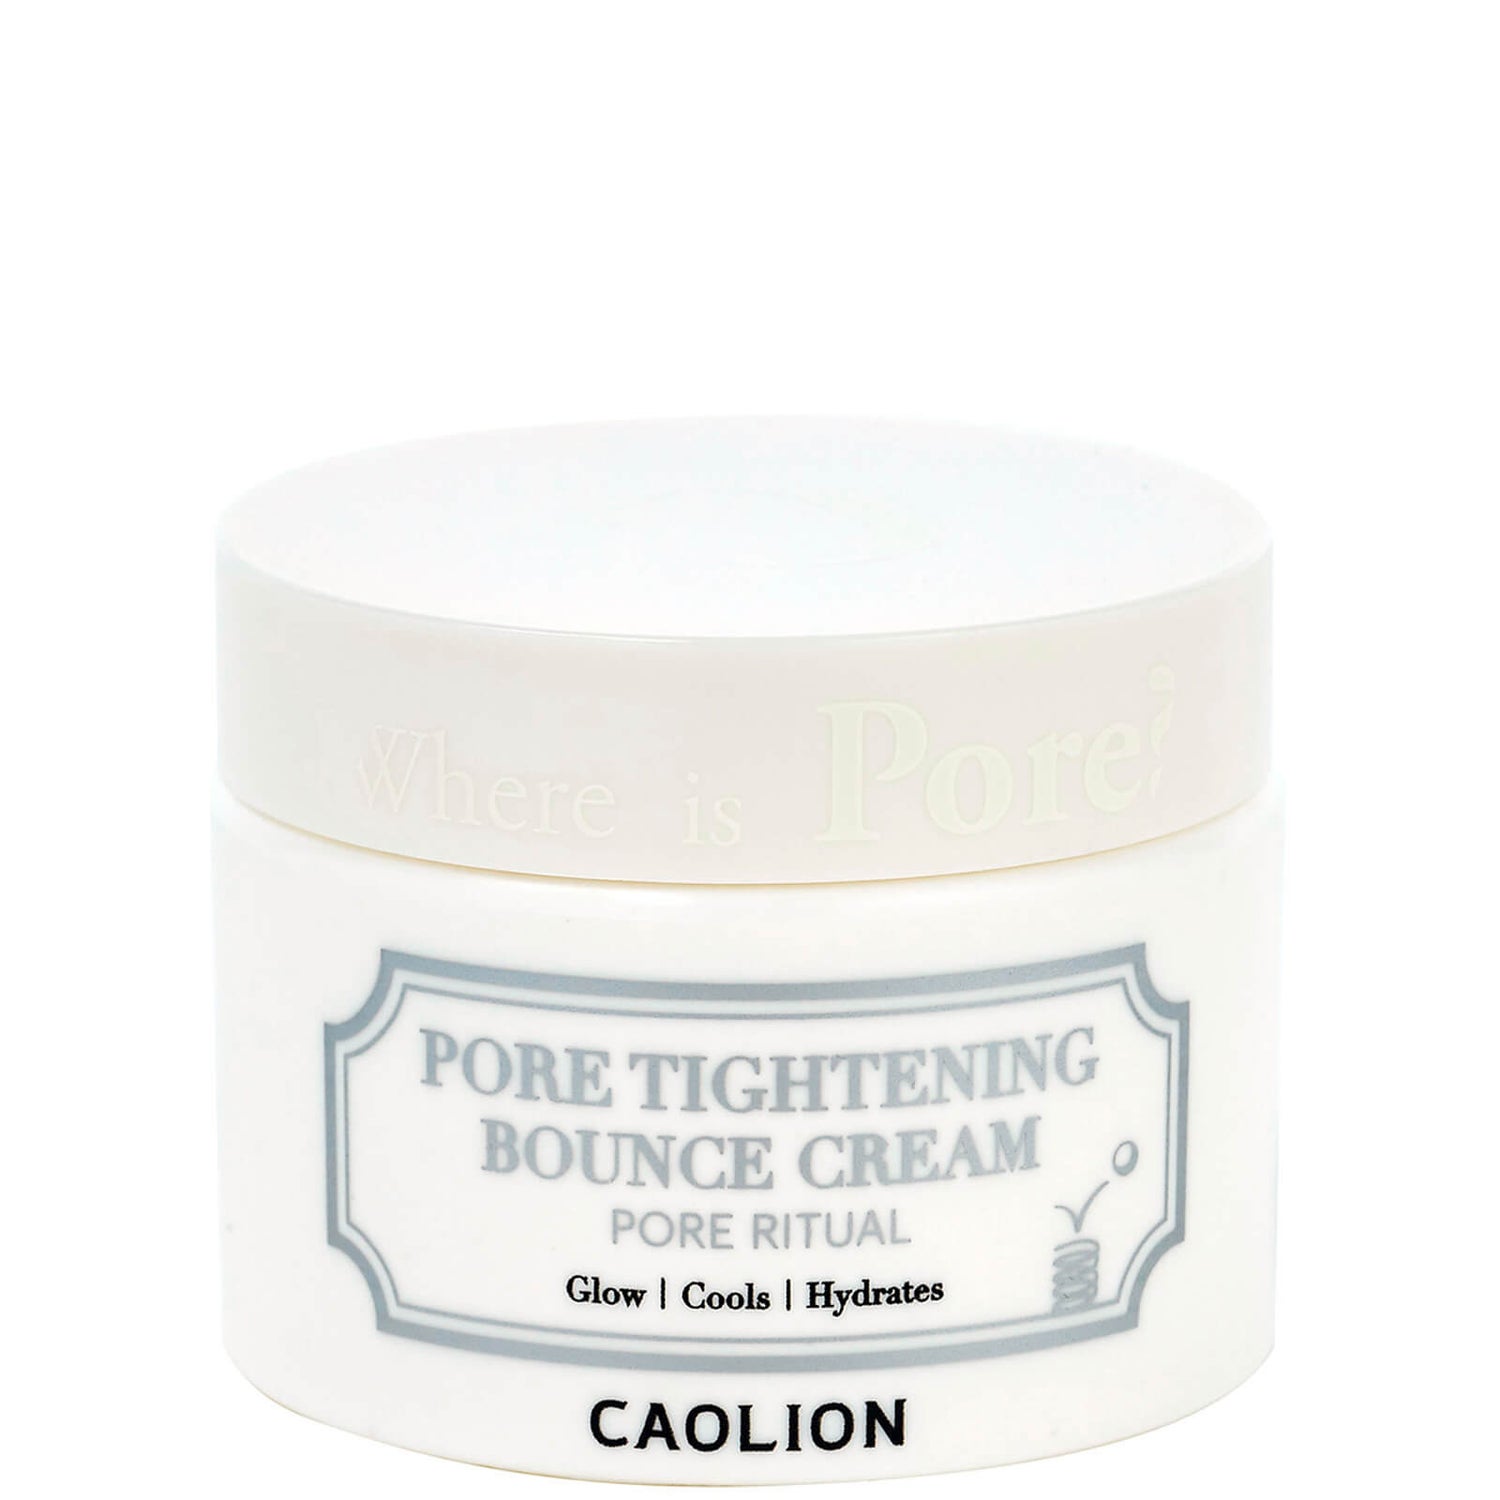 Caolion Pore Tightening Bounce Cream